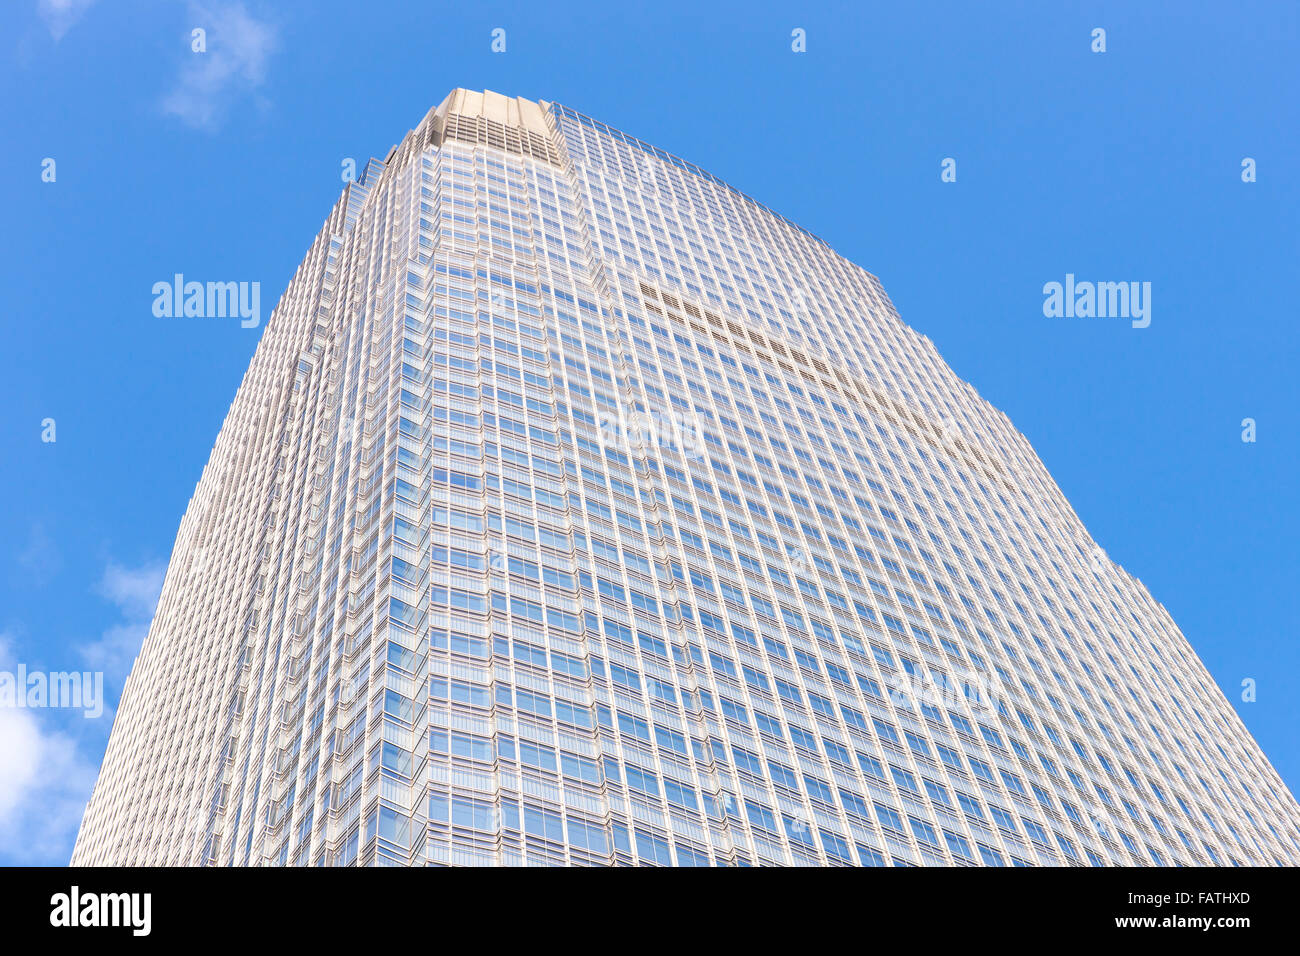 Ein Blick hinauf von 30 Hudson Street / der Goldman-Sachs-Turm in Jersey City, das höchste Gebäude in New Jersey. Stockfoto